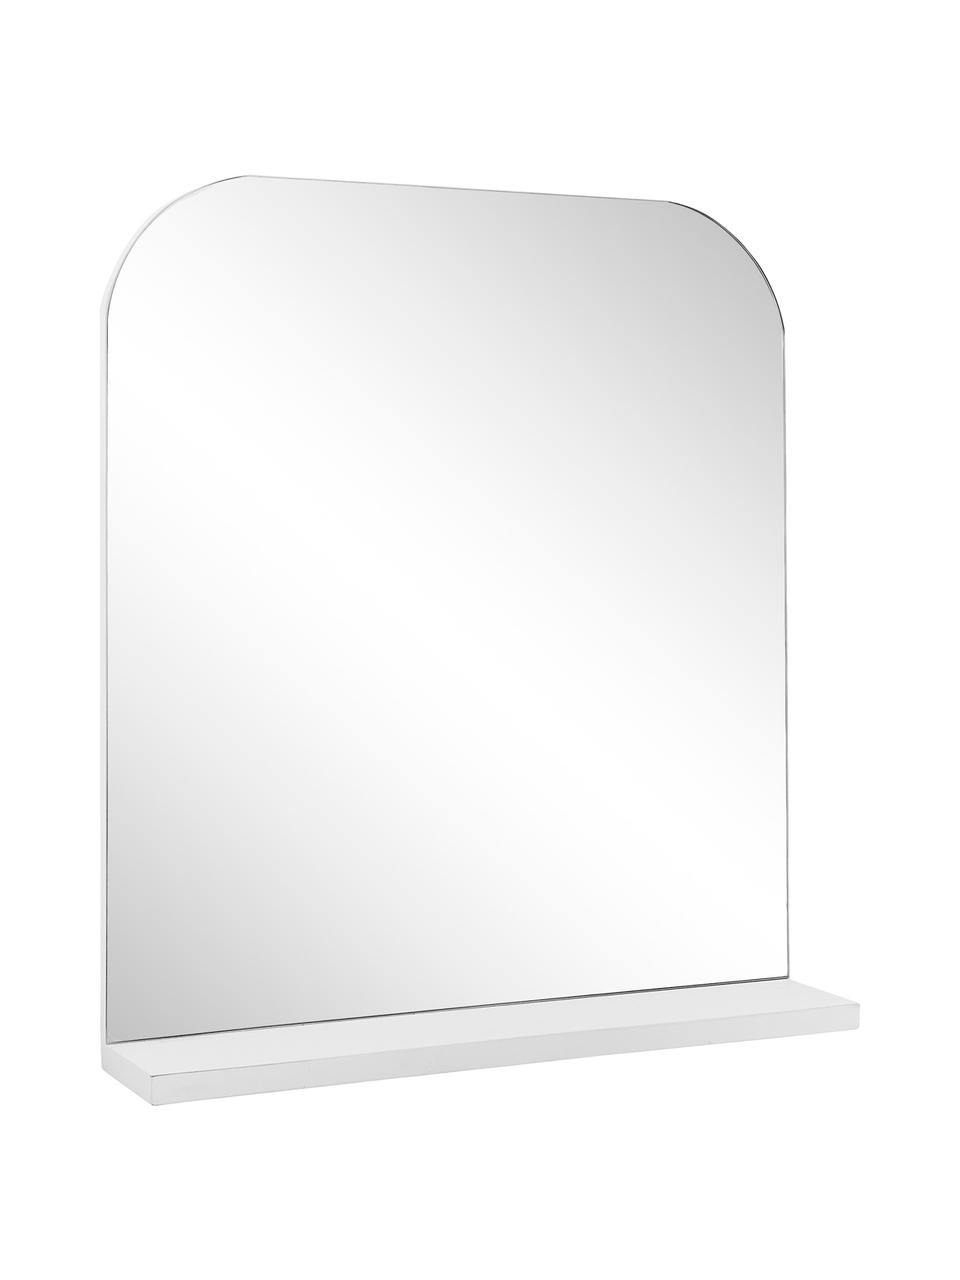 Specchio da parete con mensola Pina, Mensola: legno, Superficie dello specchio: lastra di vetro, Bianco, Larg. 55 x Alt. 63 cm